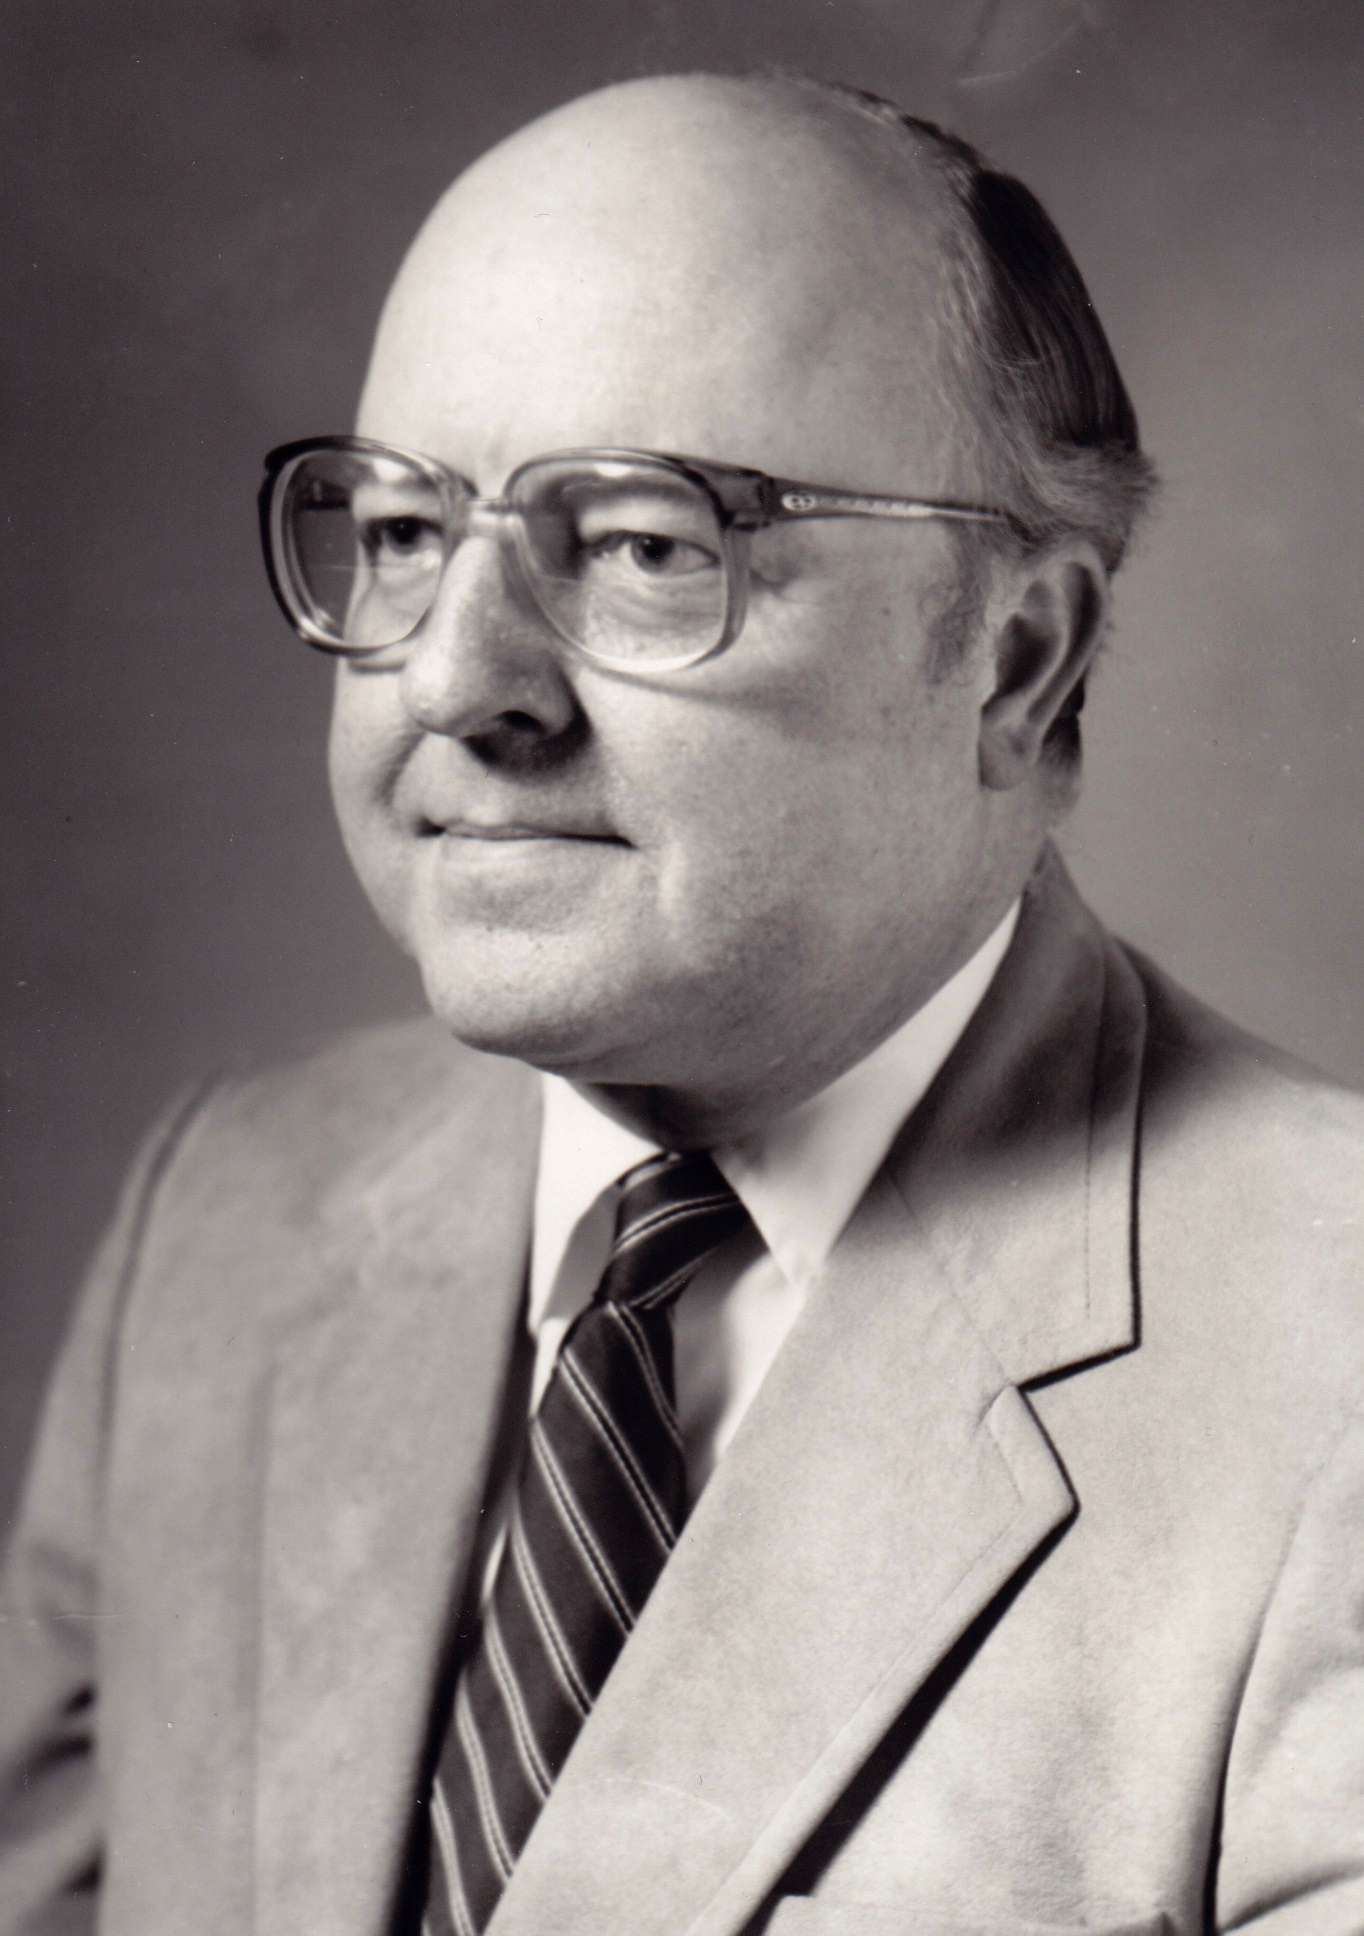 Walter Schwartz